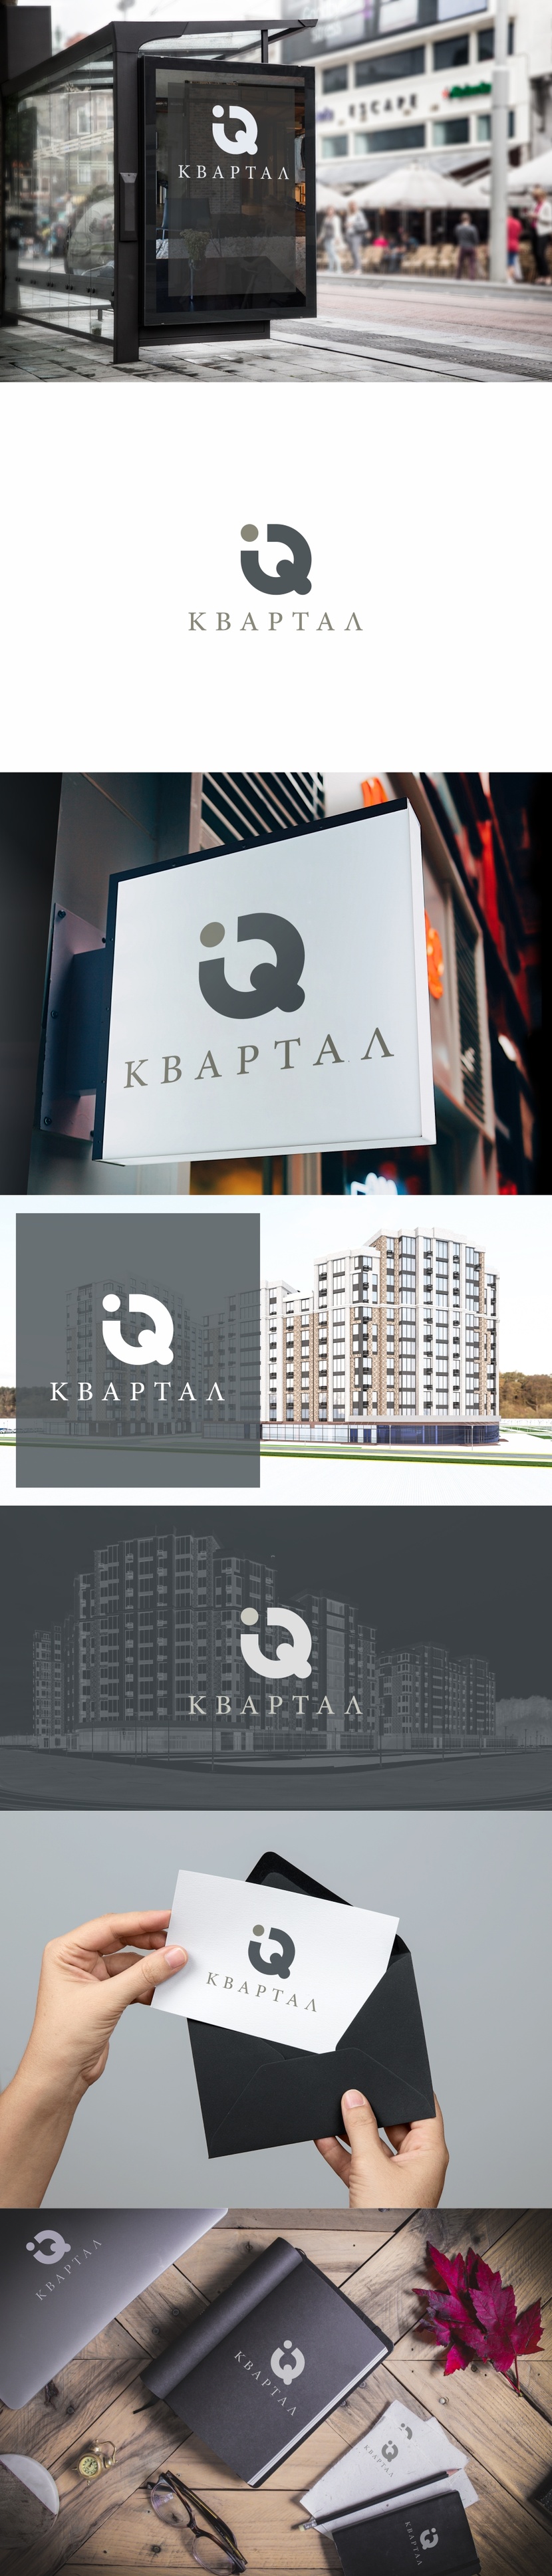 Разработка логотипа и фирменного стиля для жилого комлпекса  -  автор Андрей Мартынович